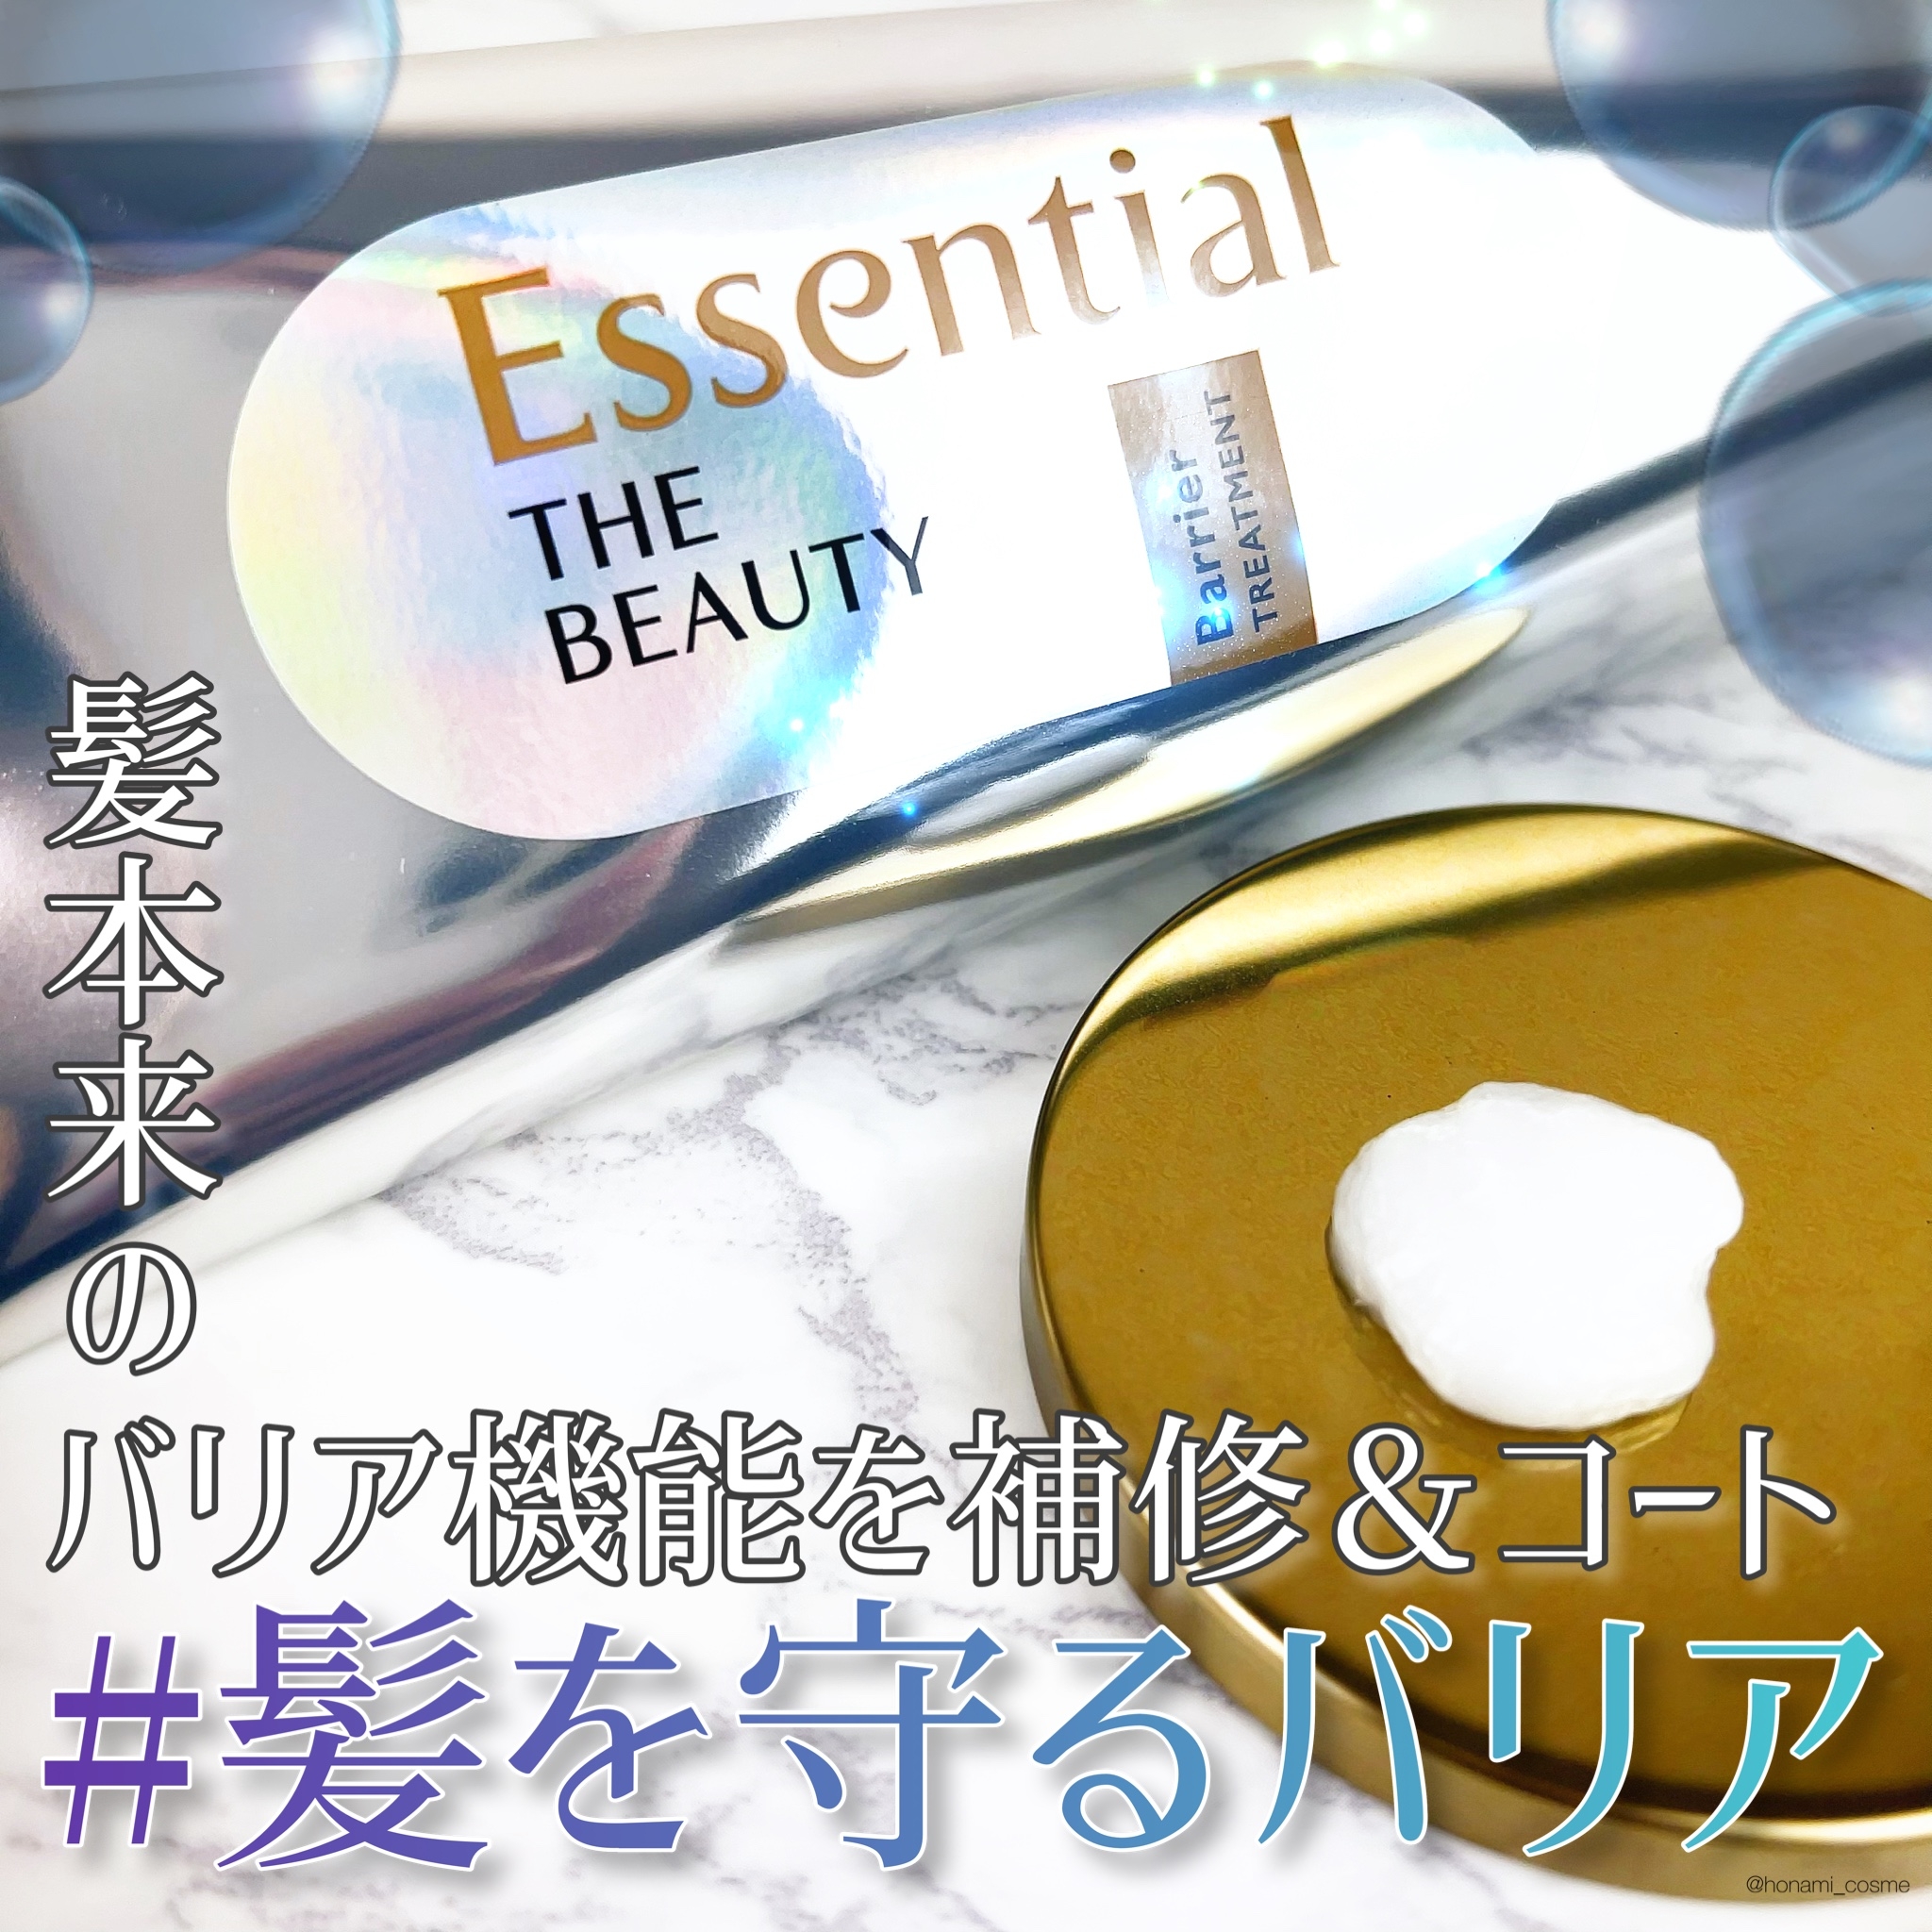 Essential(エッセンシャル) ザビューティ 髪のキメ美容バリアトリートメントの良い点・メリットに関するほなみ☺︎さんの口コミ画像1